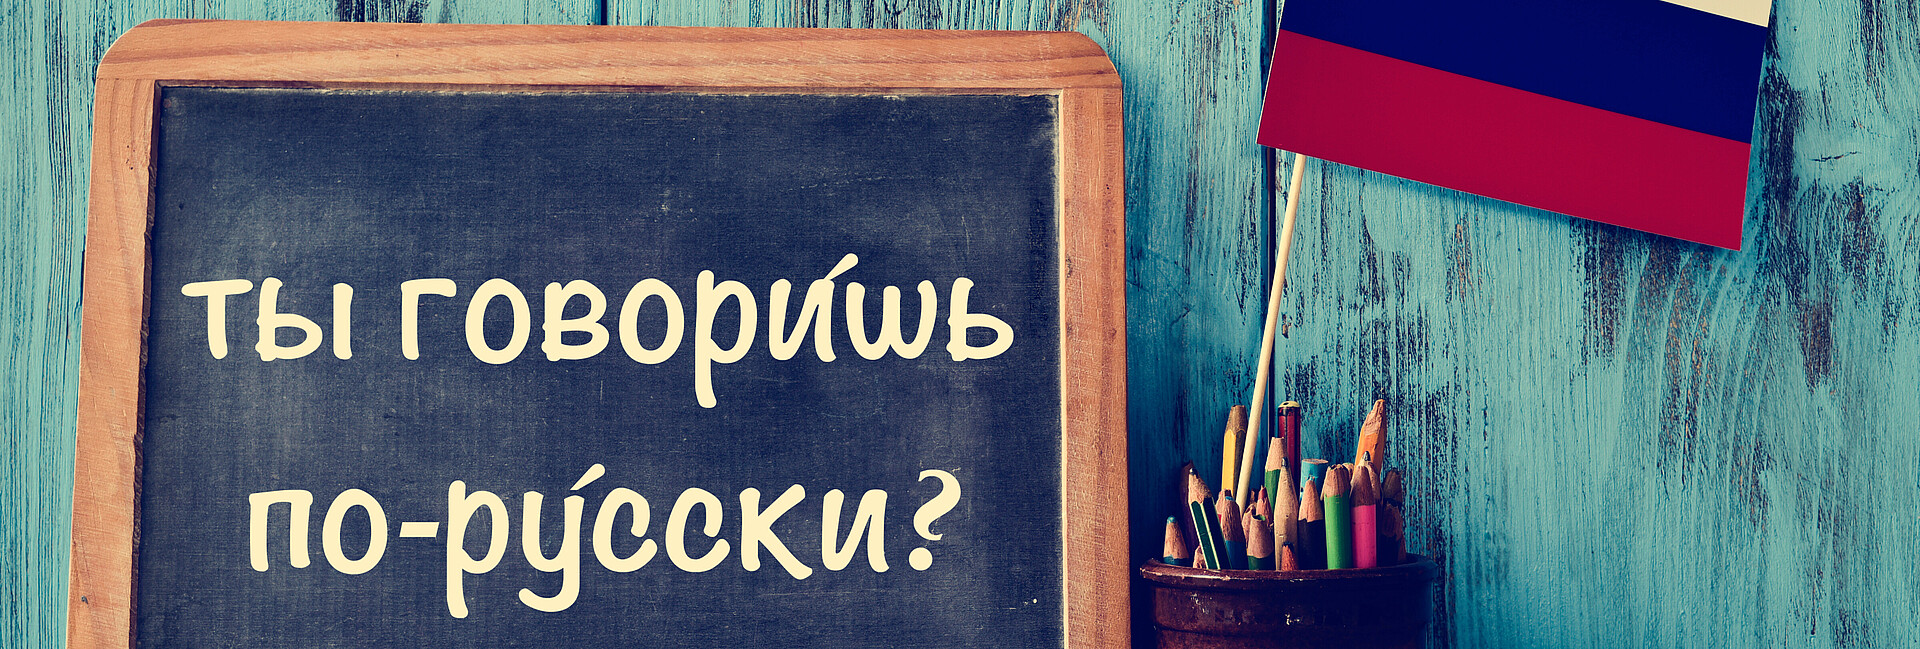 Kreidetafel mit der Frage "Sprechen Sie russisch?", in russischer Sprache geschrieben geschrieben